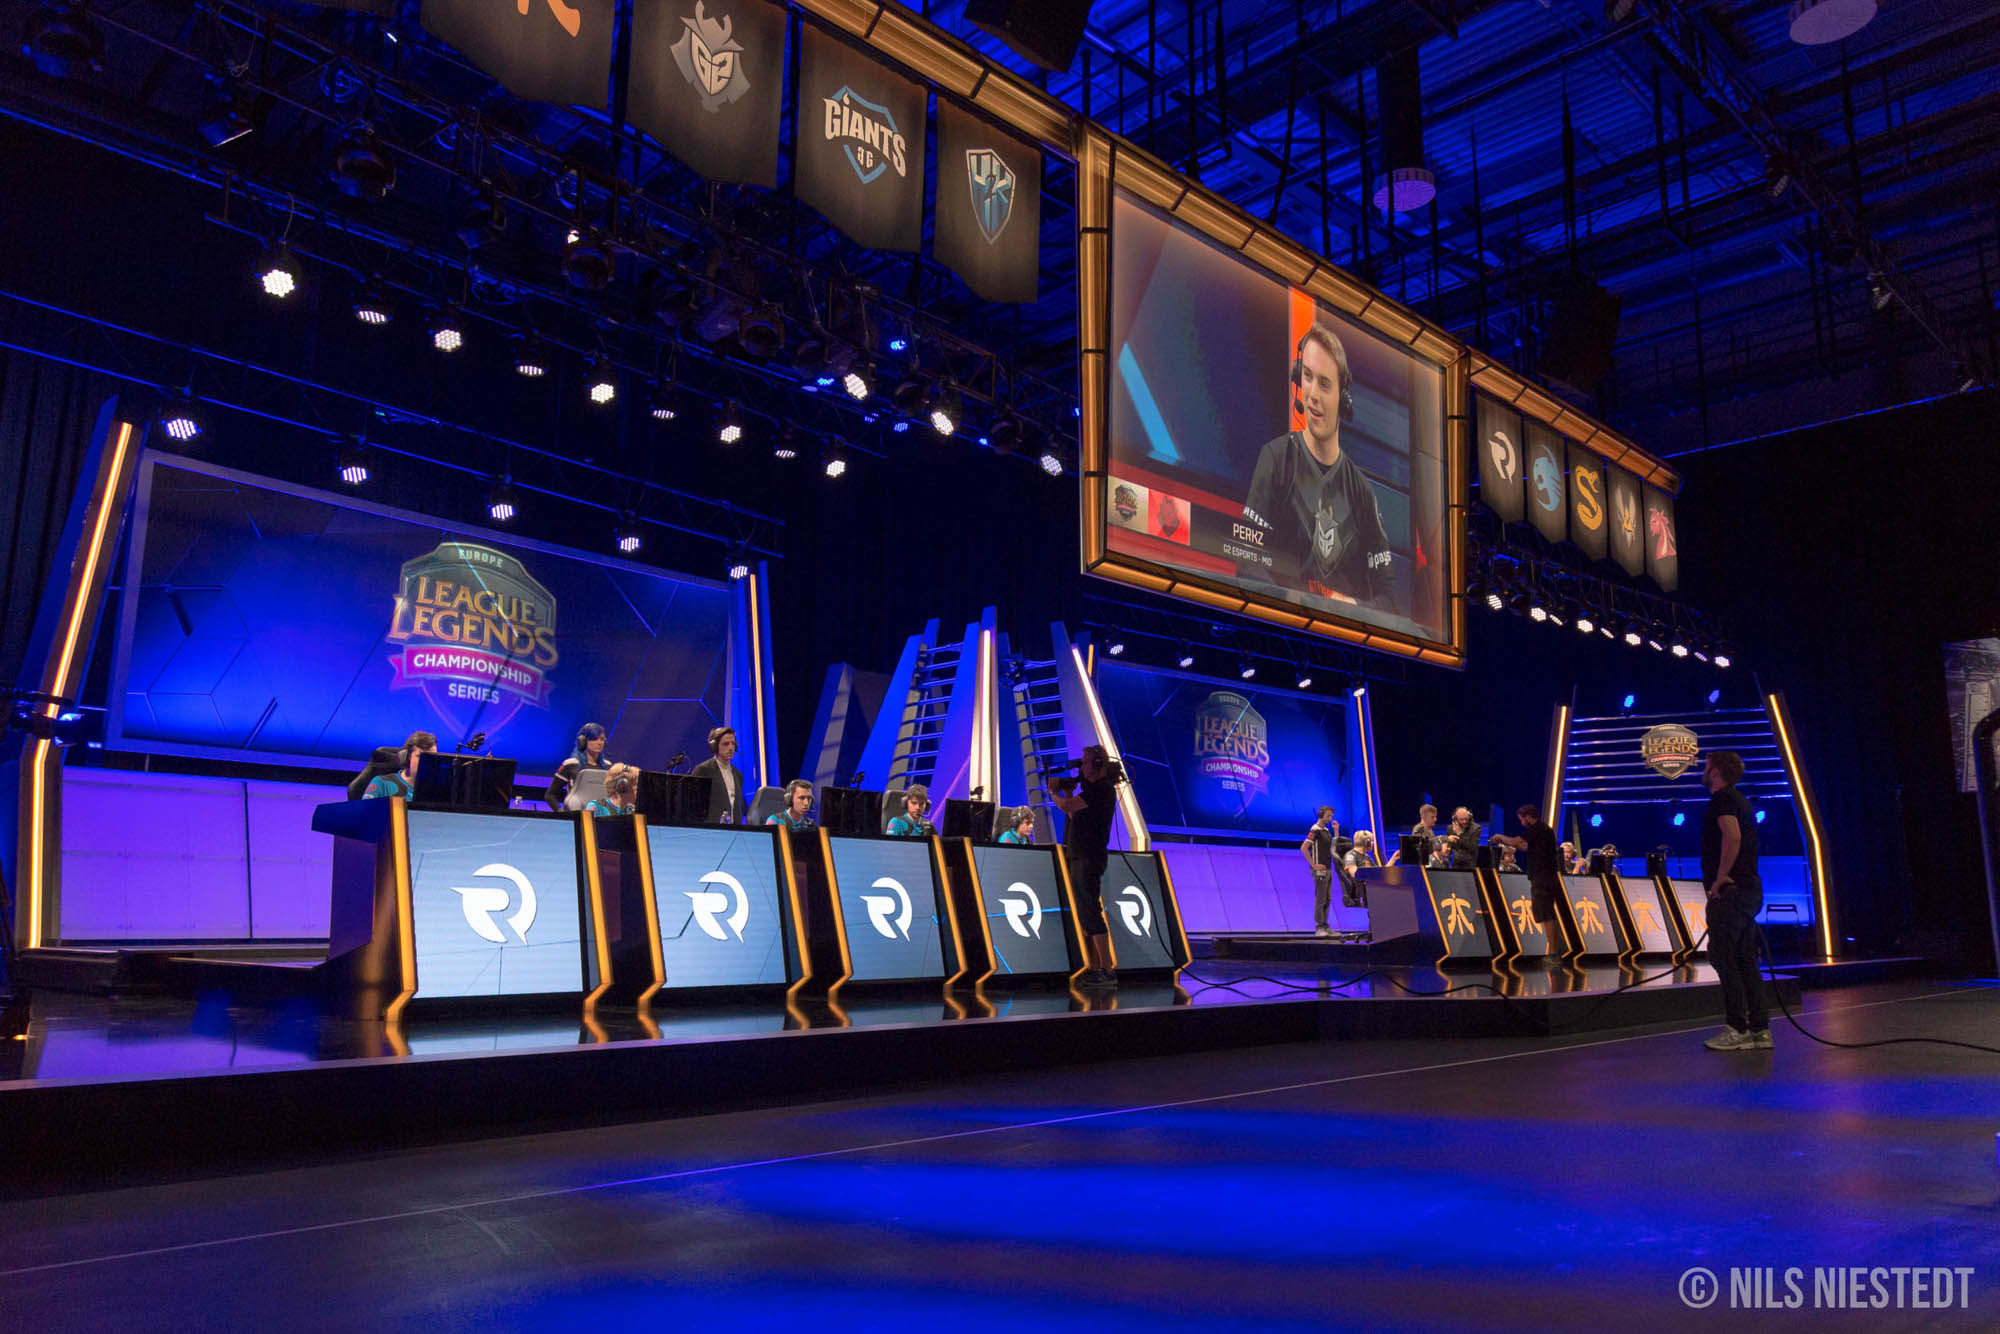 Bühne eines des Onlinespiels League of Legends in orangem Licht